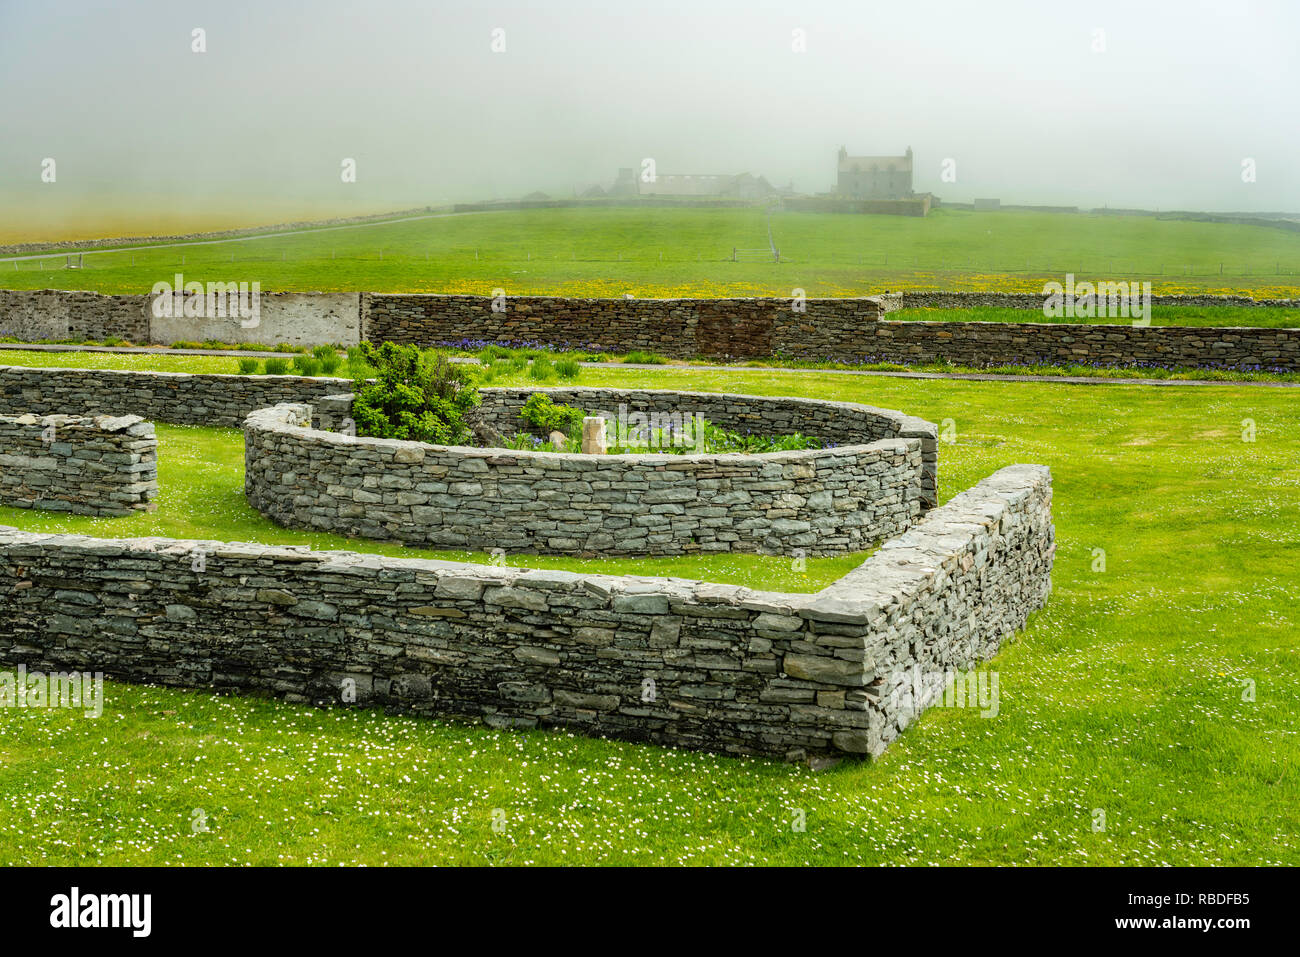 Jarlshof prähistorischen und nordischen Siedlung archäologischen Stätte in der Shetlandinseln, Schottland, Großbritannien, Europa. Stockfoto